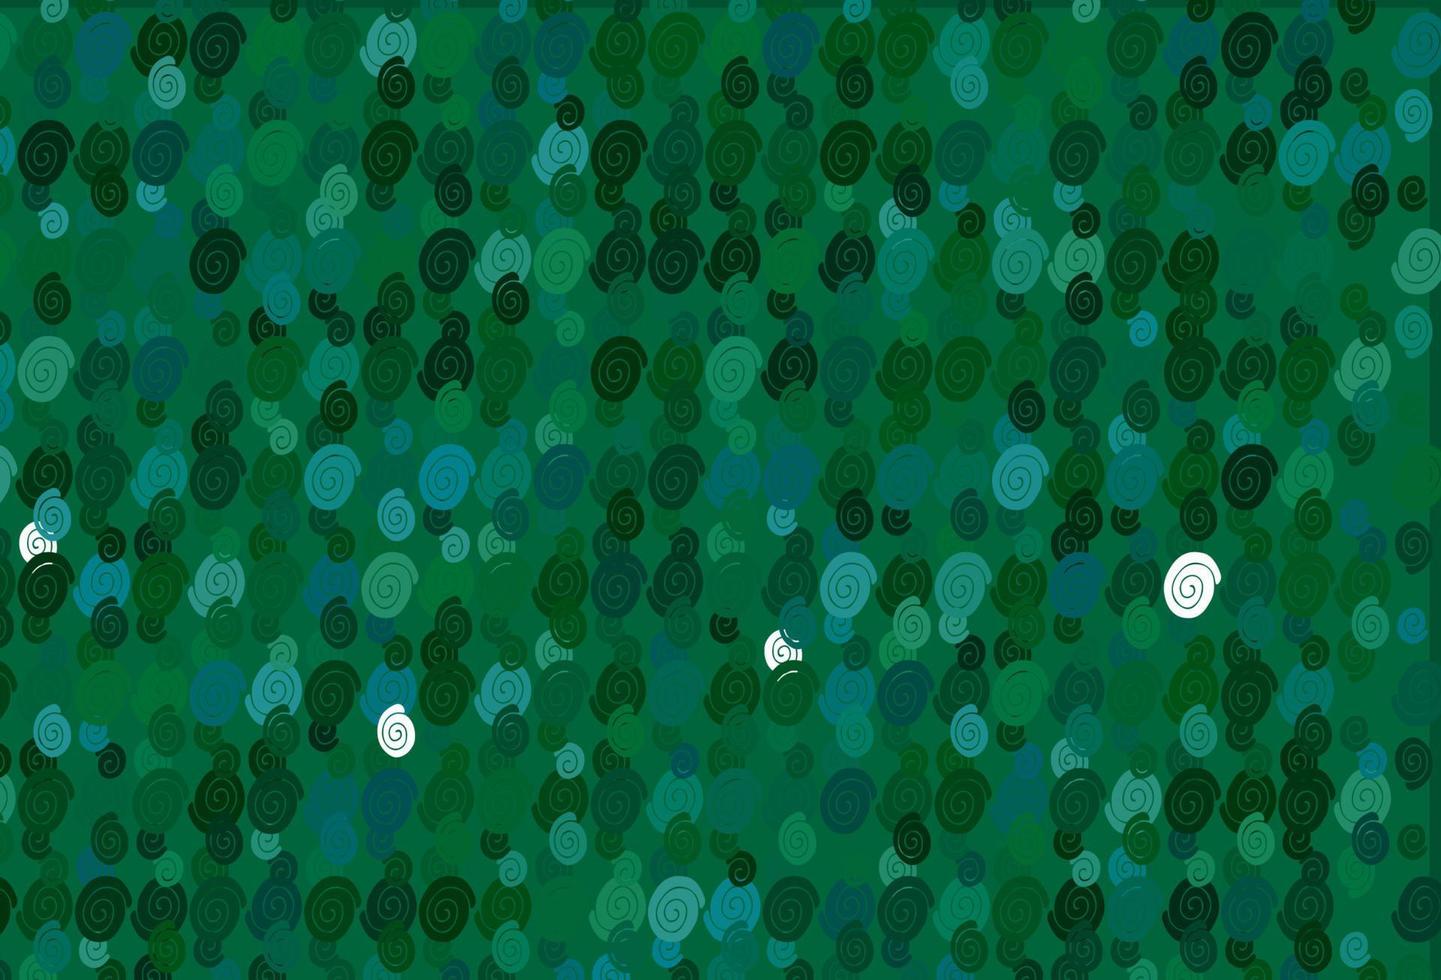 fundo vector azul e verde claro com linhas dobradas.